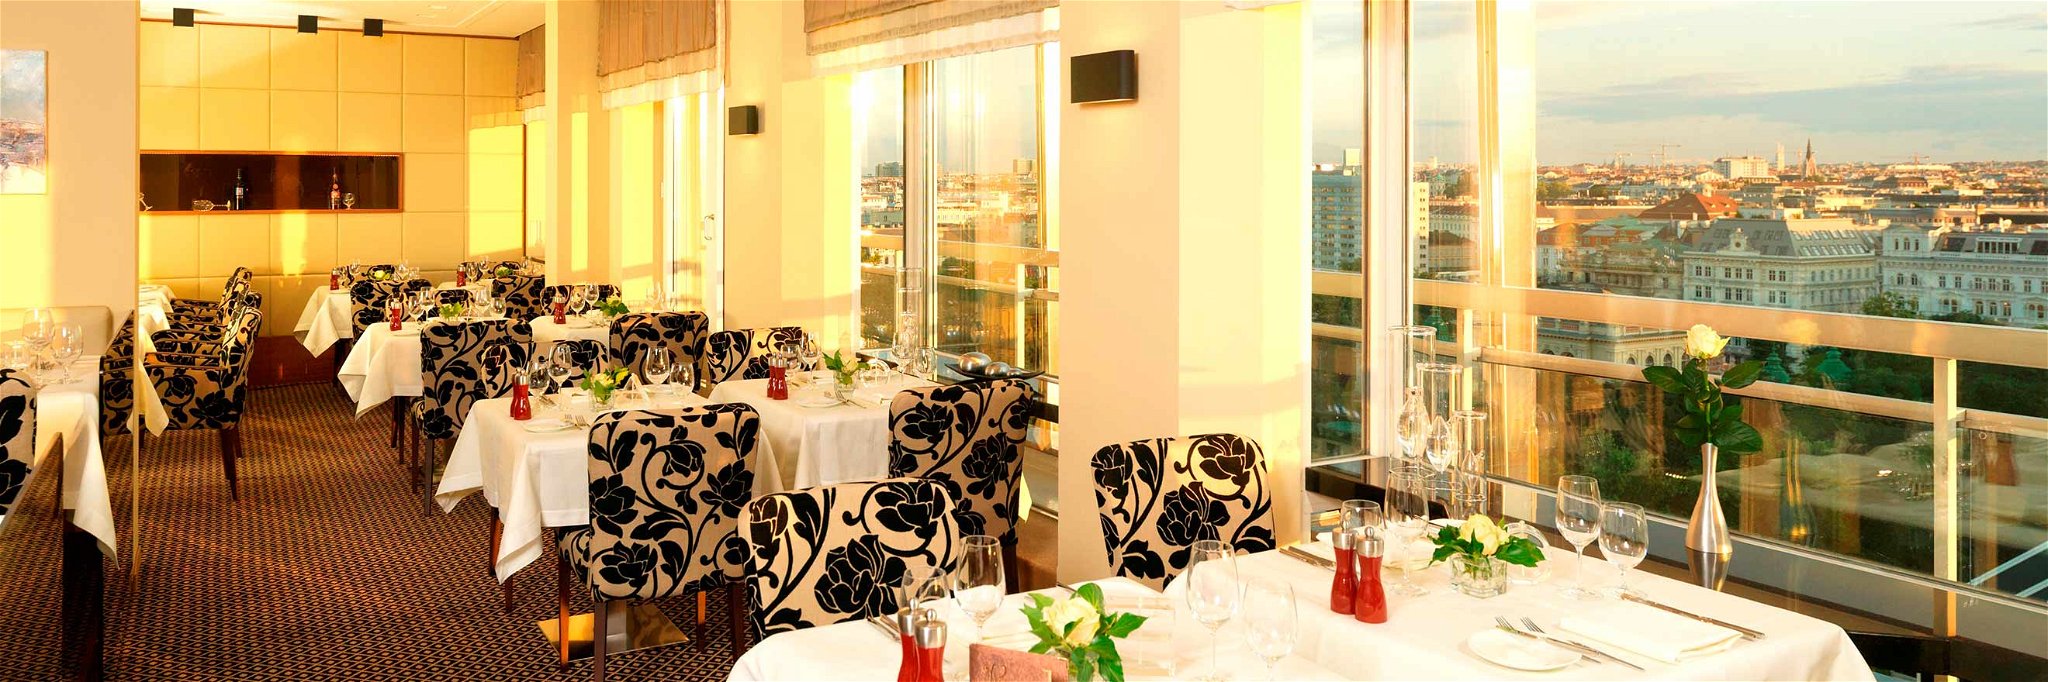 Restaurant »Das Schick« mit herrlichen Blick über die Dächer von Wien